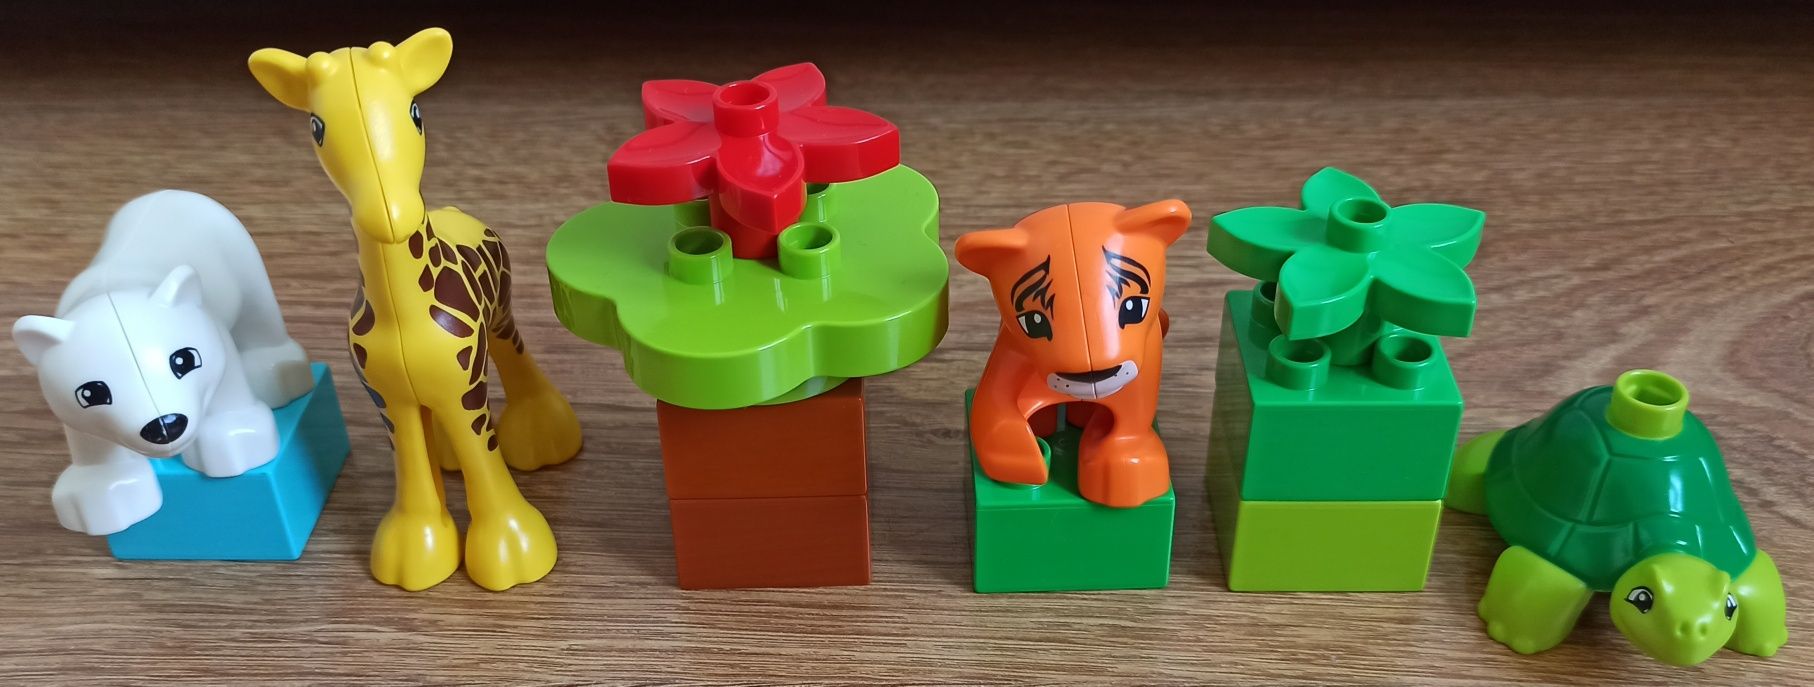 LEGO DUPLO 10801 zwierzątka żyrafa tygrys miś polarny żółw klocki 2+